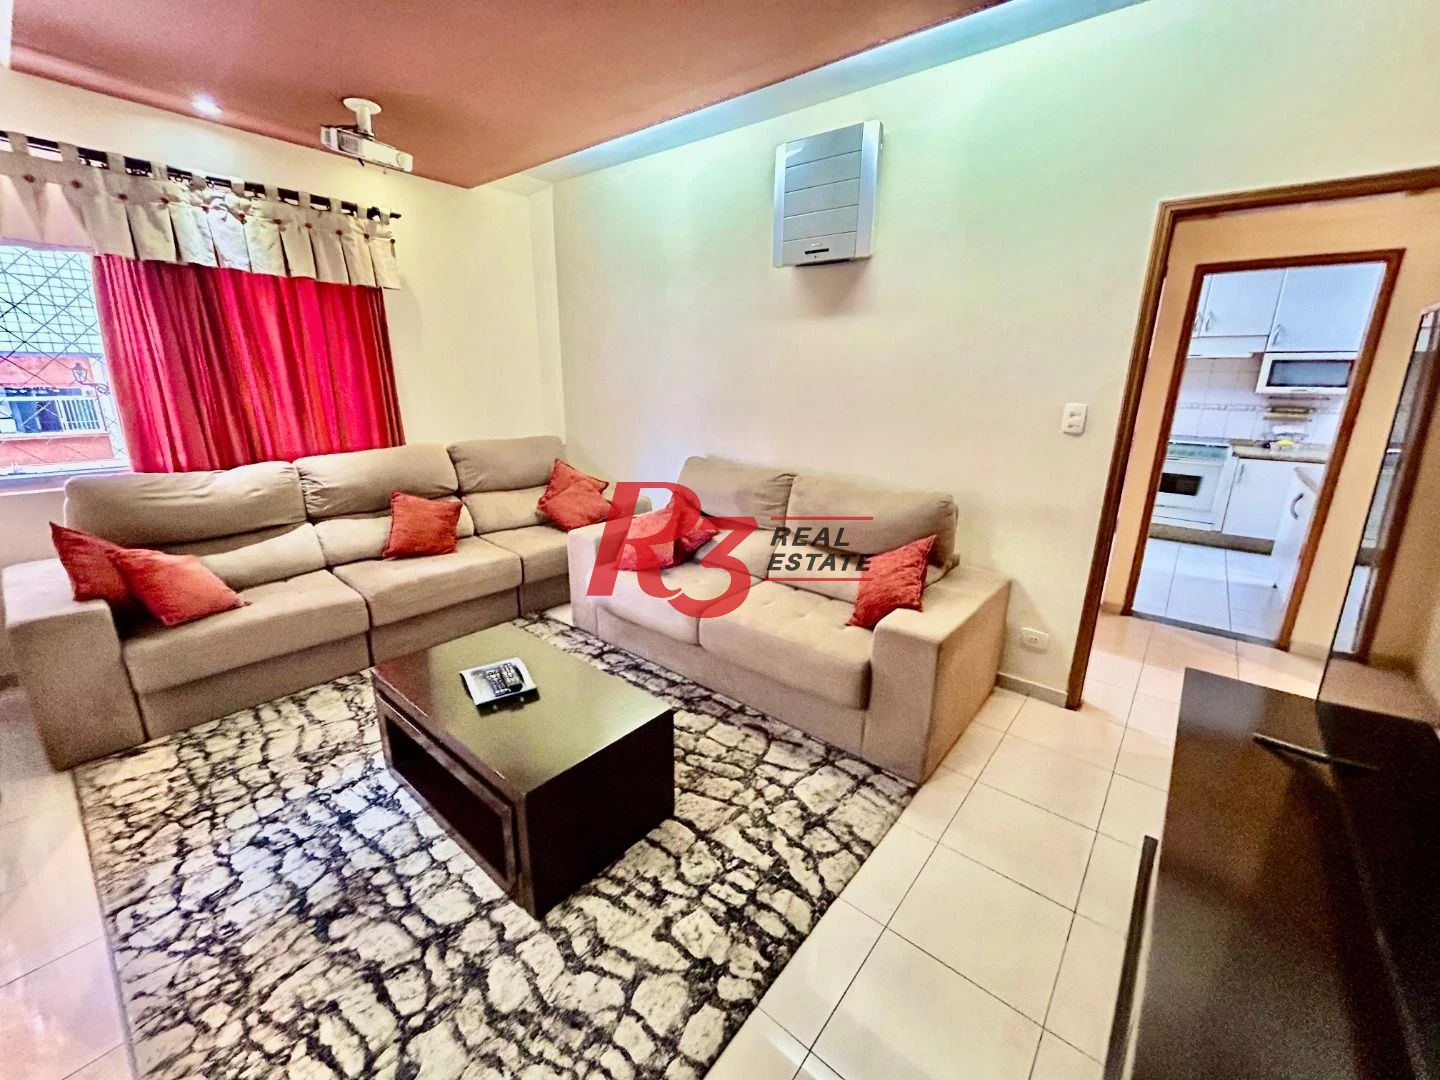 Apartamento com 4 dormitórios à venda, 220 m² por R$ 1.500.000,00 - Aparecida - Santos/SP